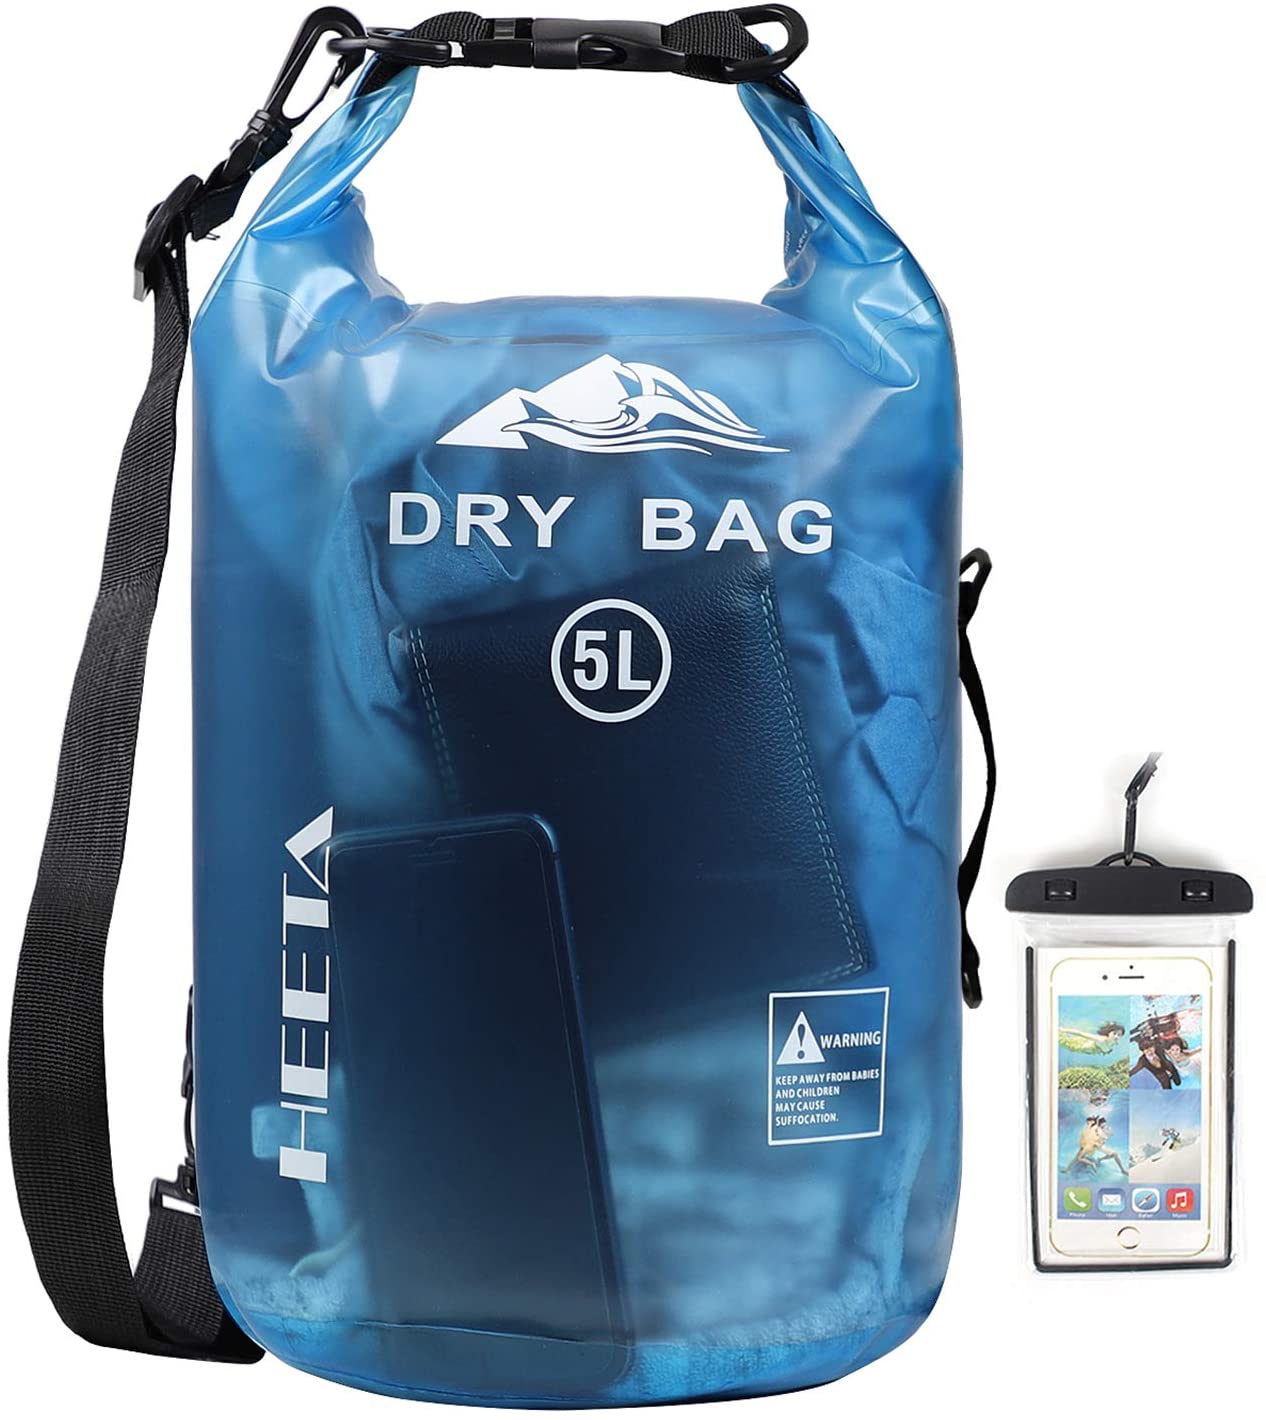 Waterproof Bag for Boating